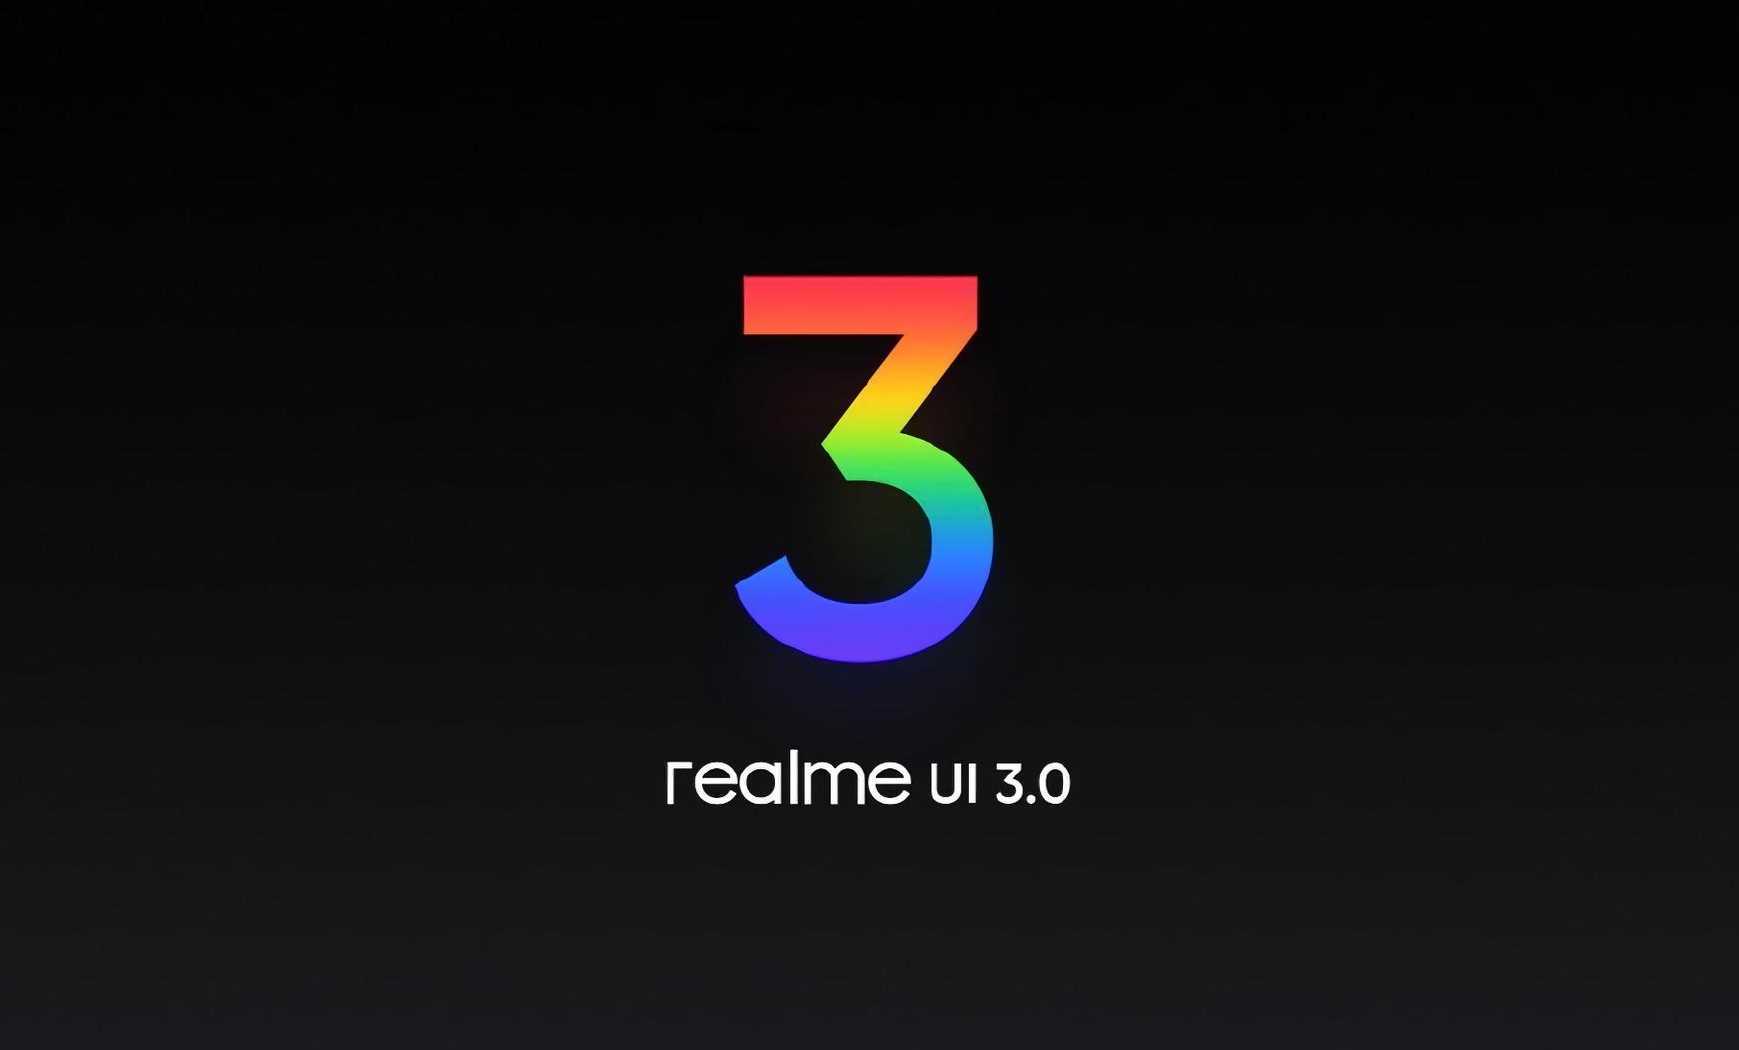 22 smartfony Realme otrzymają firmware Realme UI 3.0 - opublikowano oficjalną listę